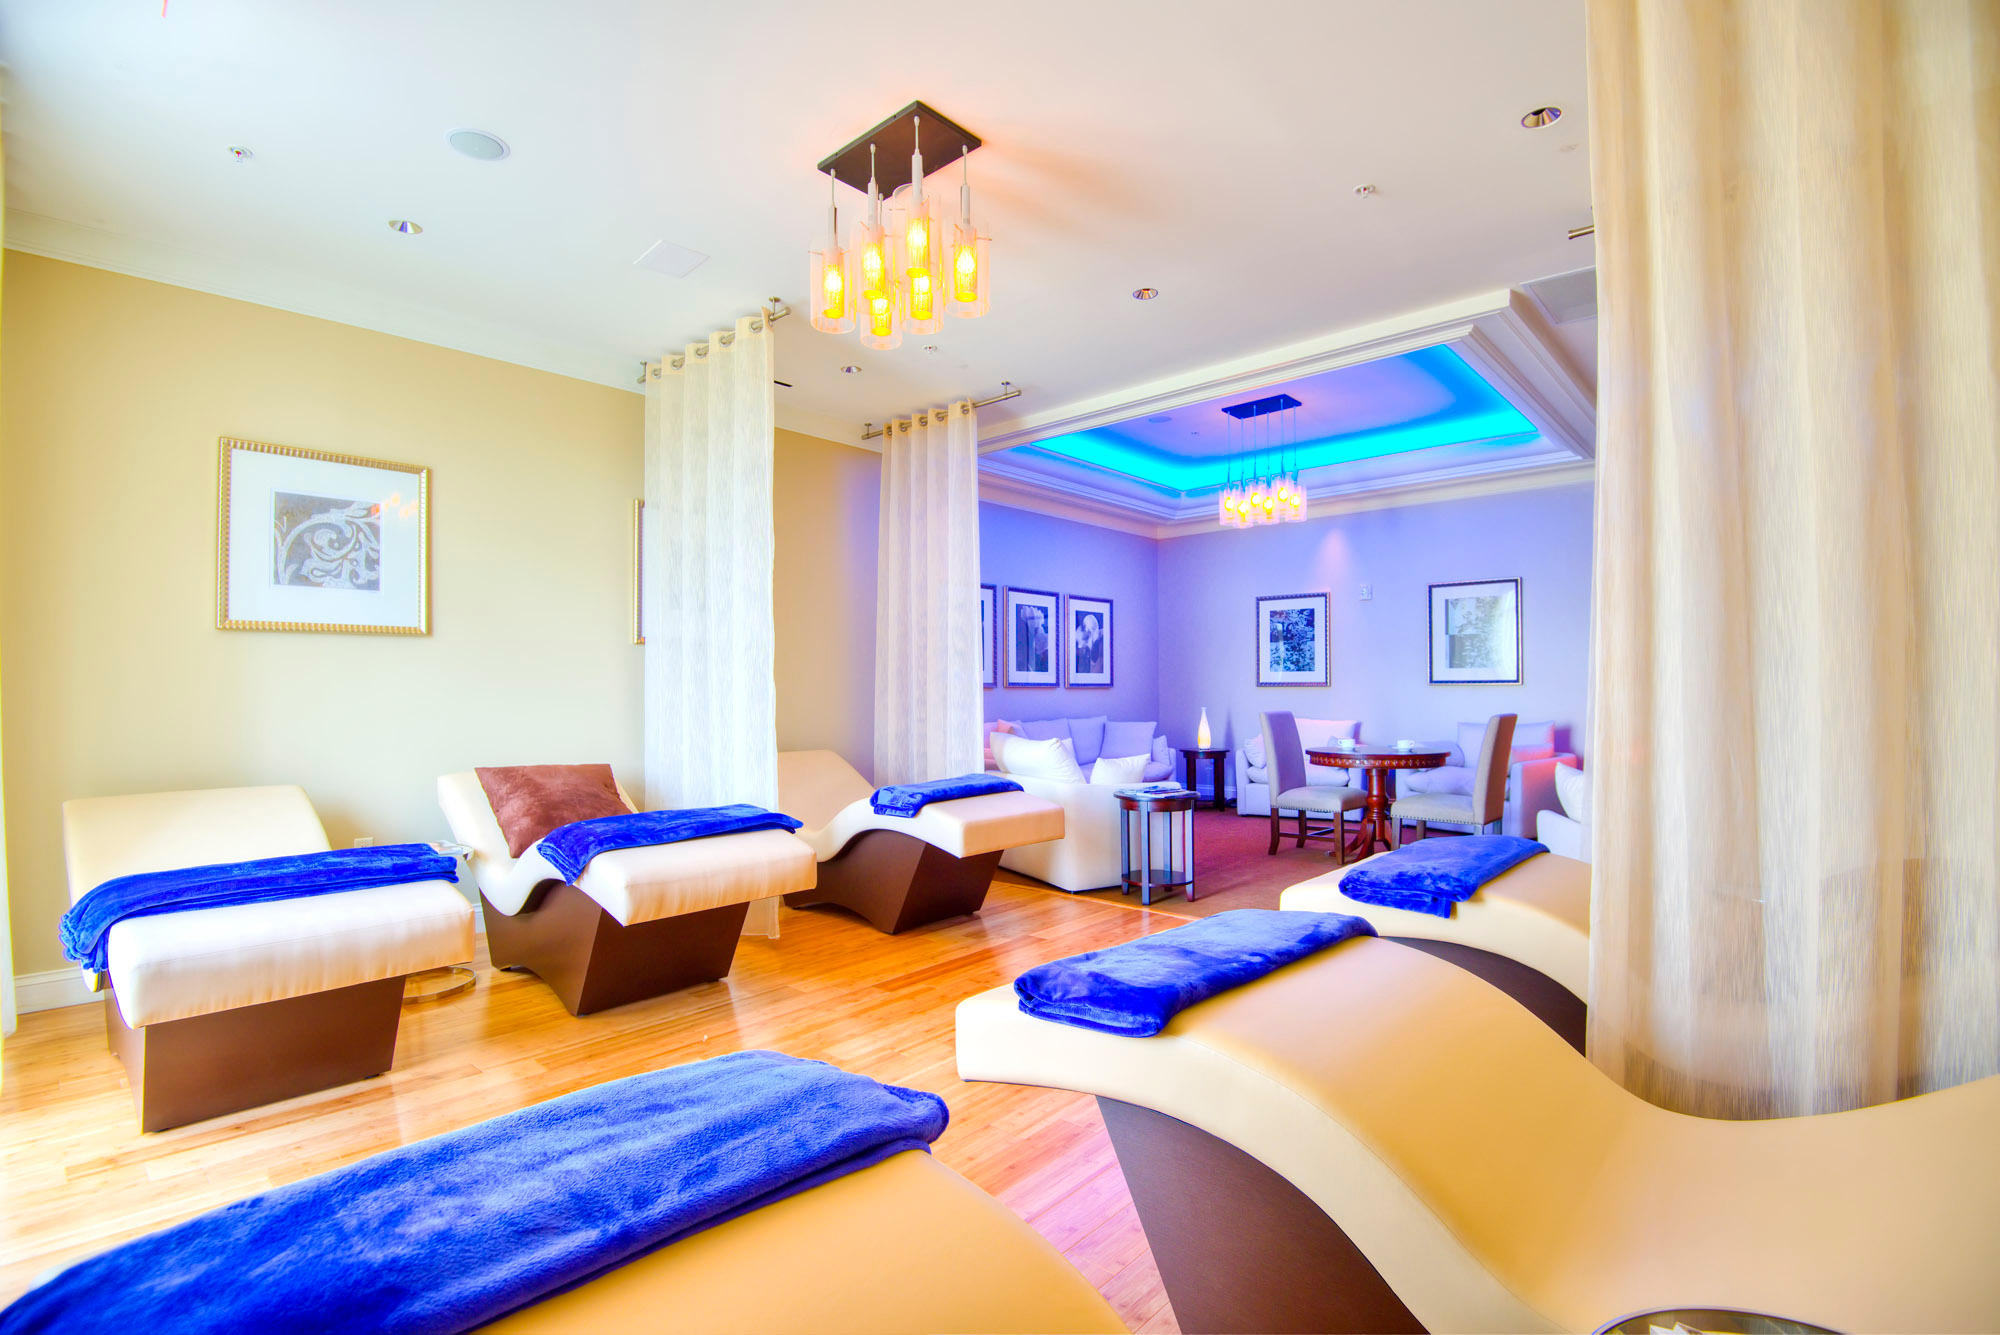 Tranquility Lounge Waldorf Astoria Spa Orlando Orlando (407)597-5360